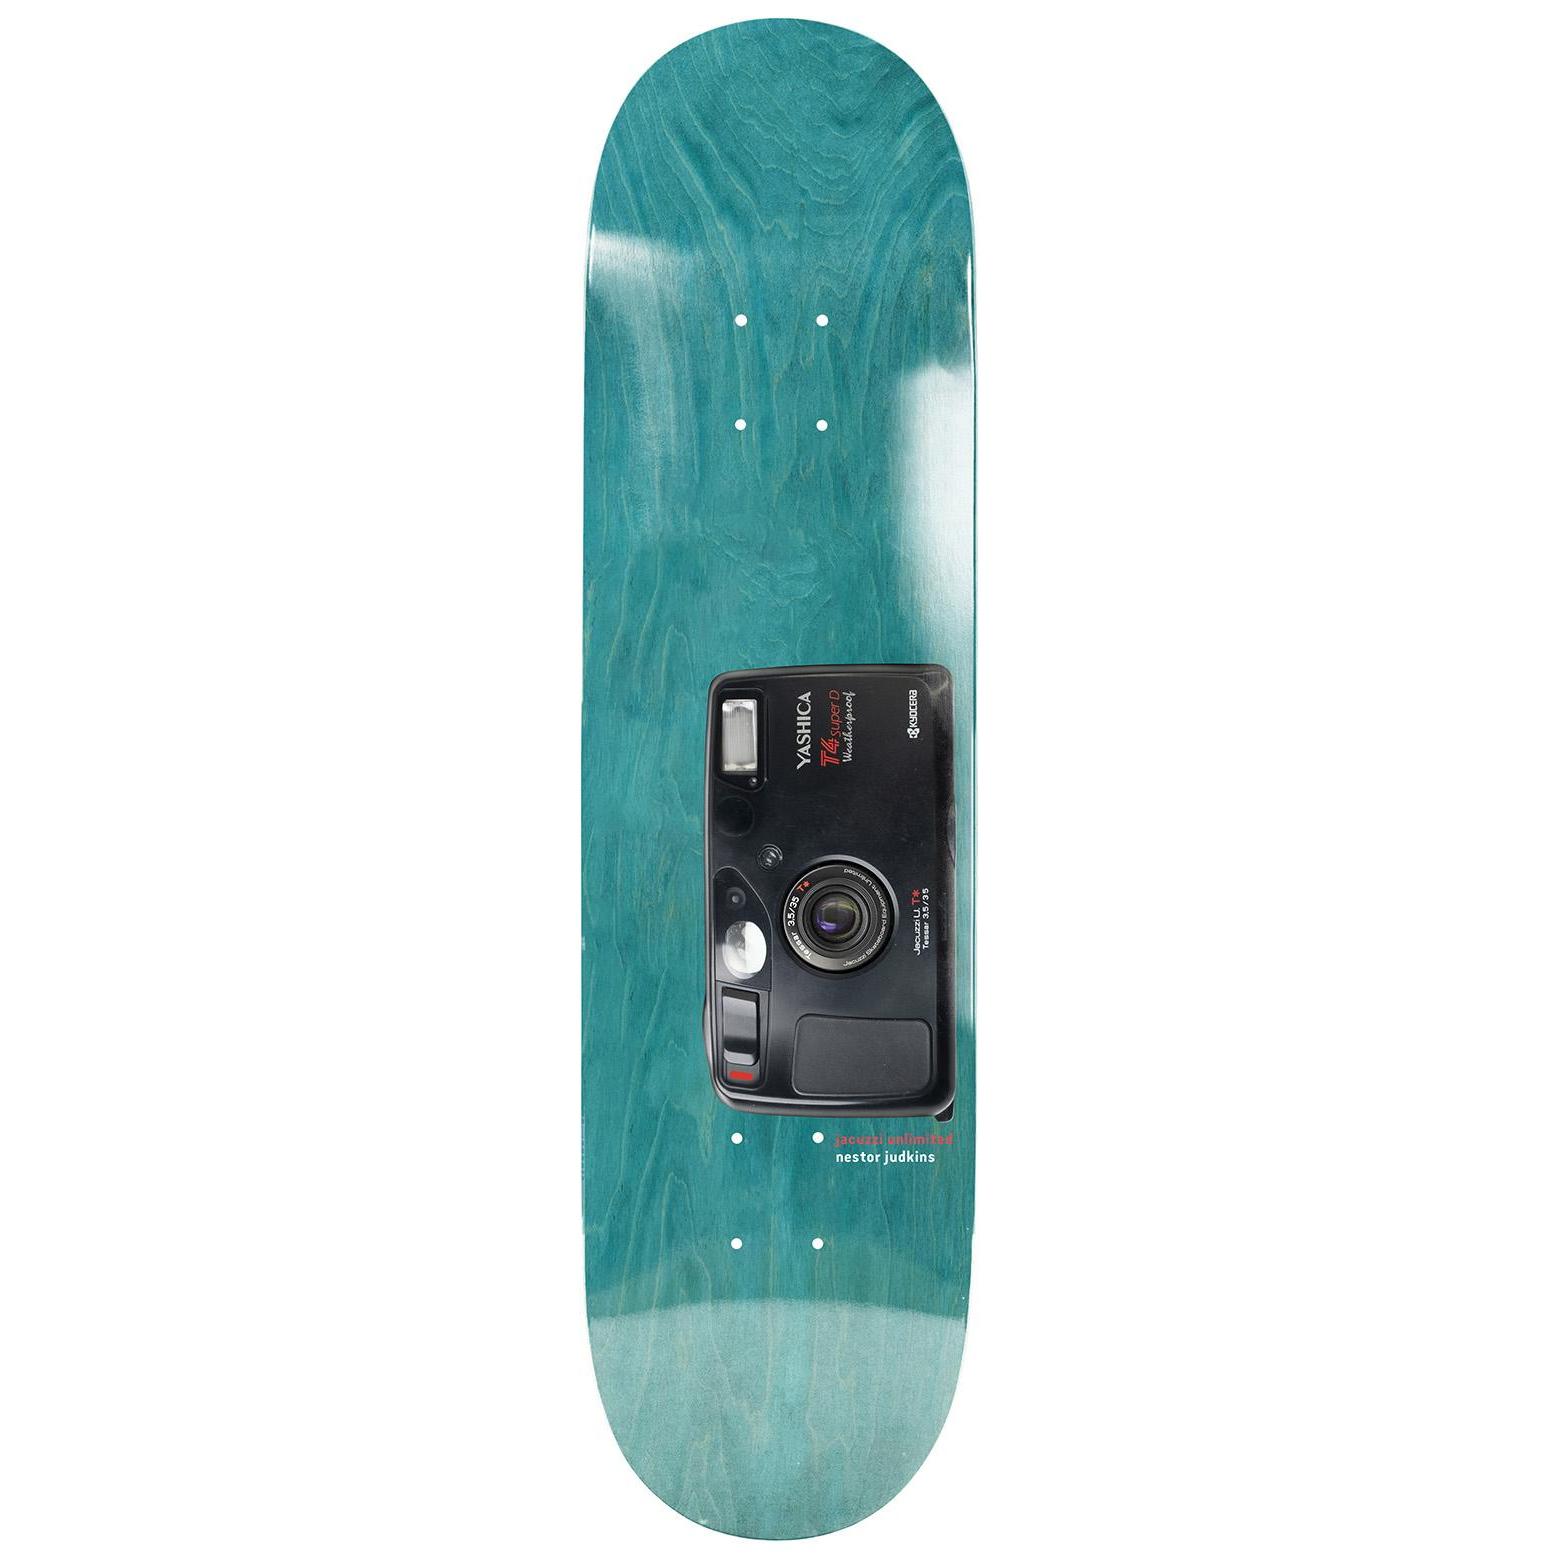 Planches et skateboards complets taille deck 8.0 - Skate.fr